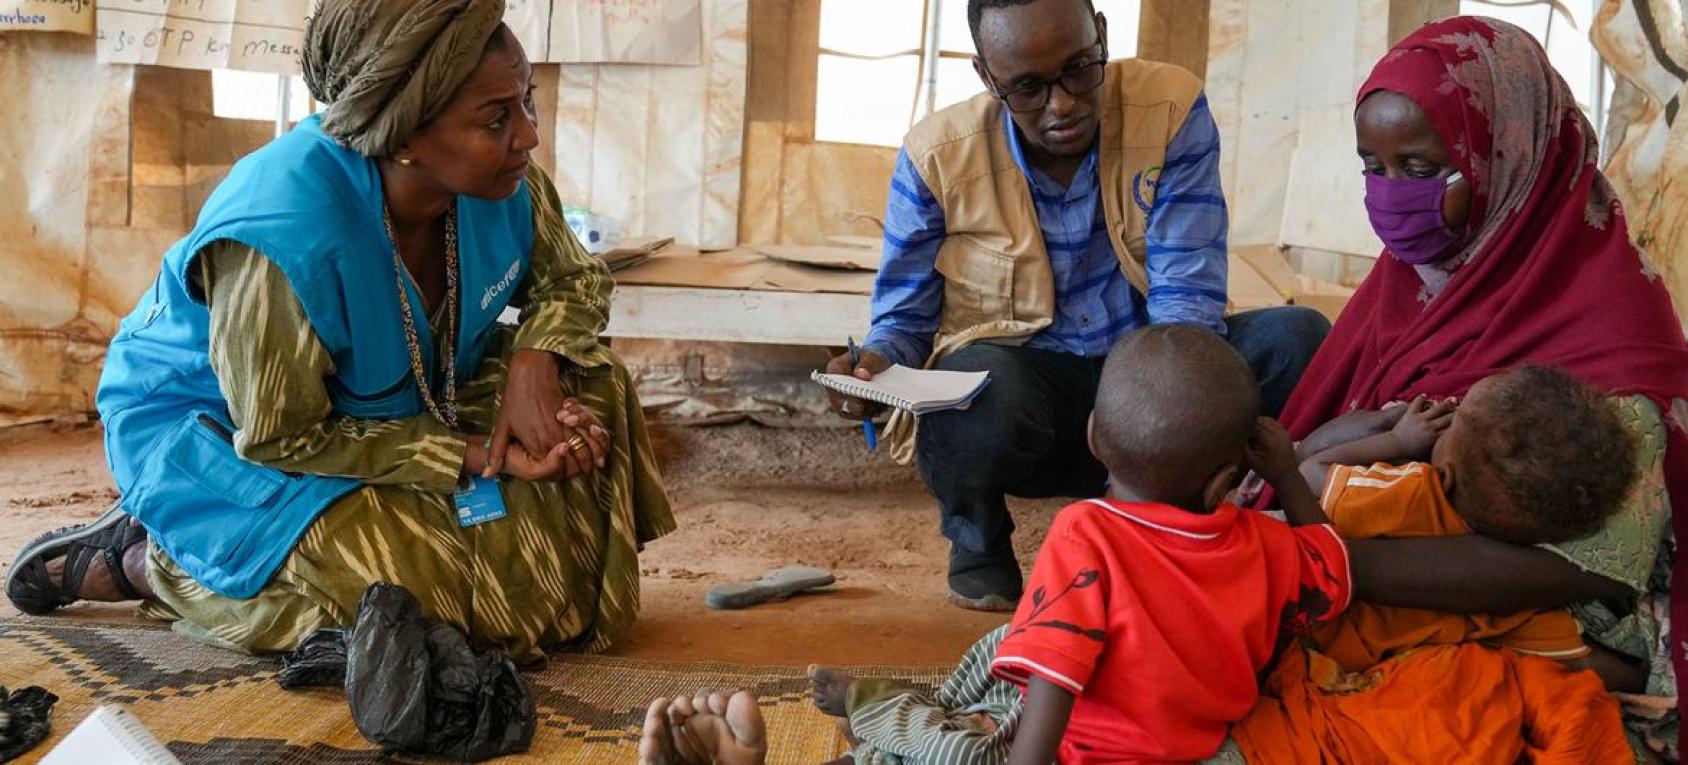 تلتقي نائبة المدير الإقليمي لليونيسف لشرق وجنوب أفريقيا رانيا داغاش (إلى اليسار) أمًا وتوأمها اللذين يعانيان من سوء التغذية، في مركز صحي في دولو بالصومال.